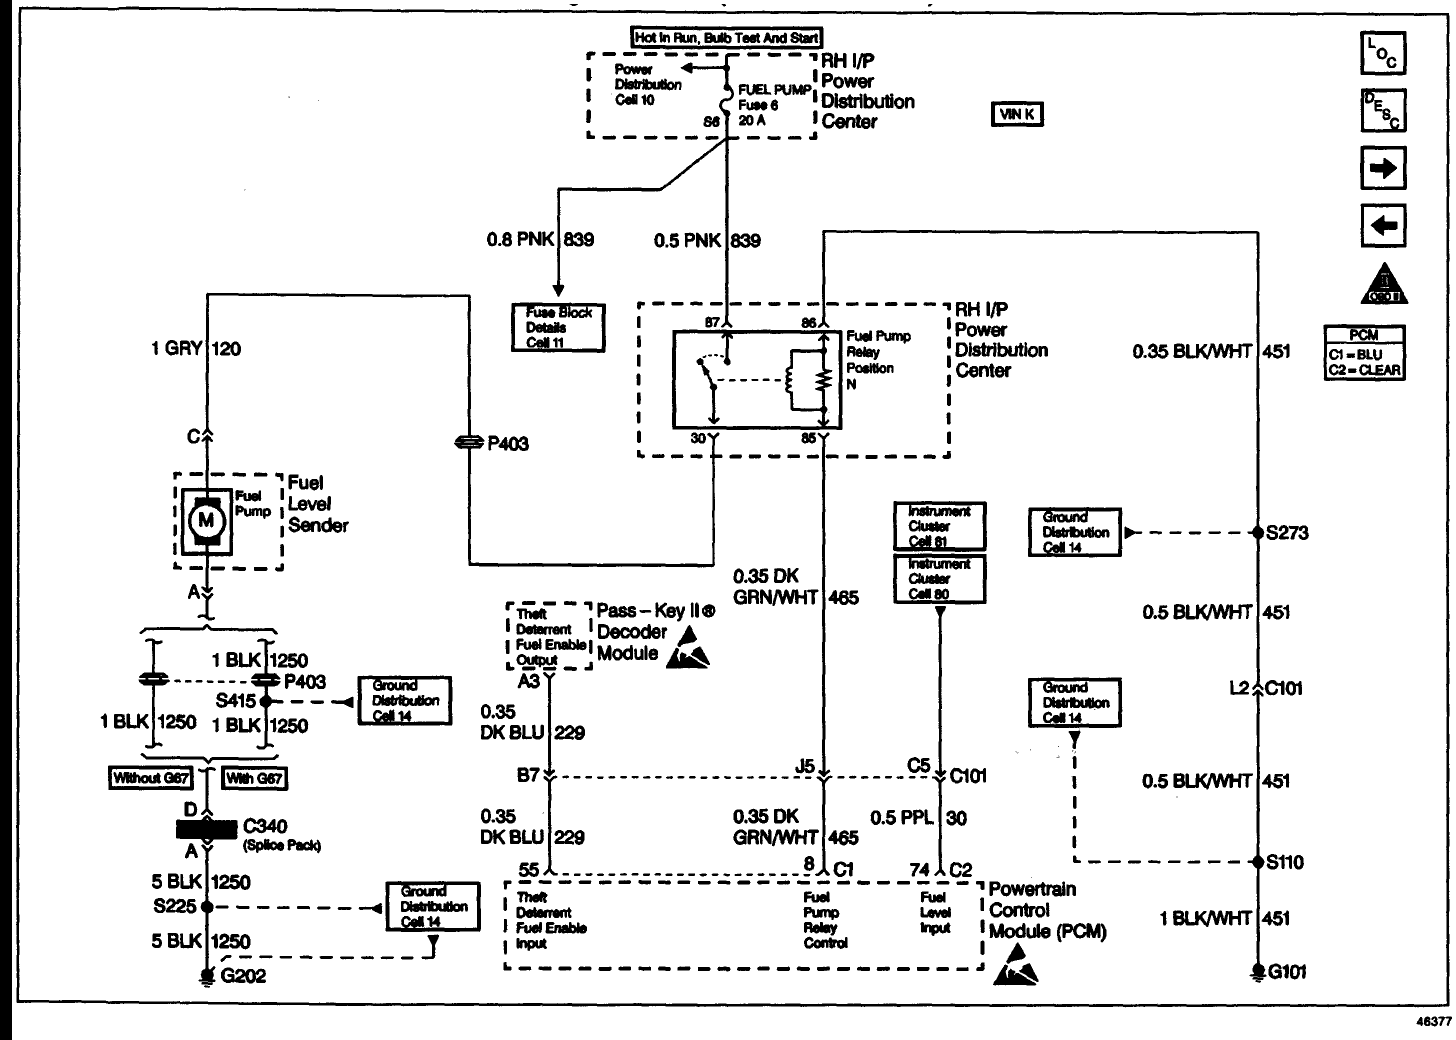 2001 oldsmobile alero radiator diagram